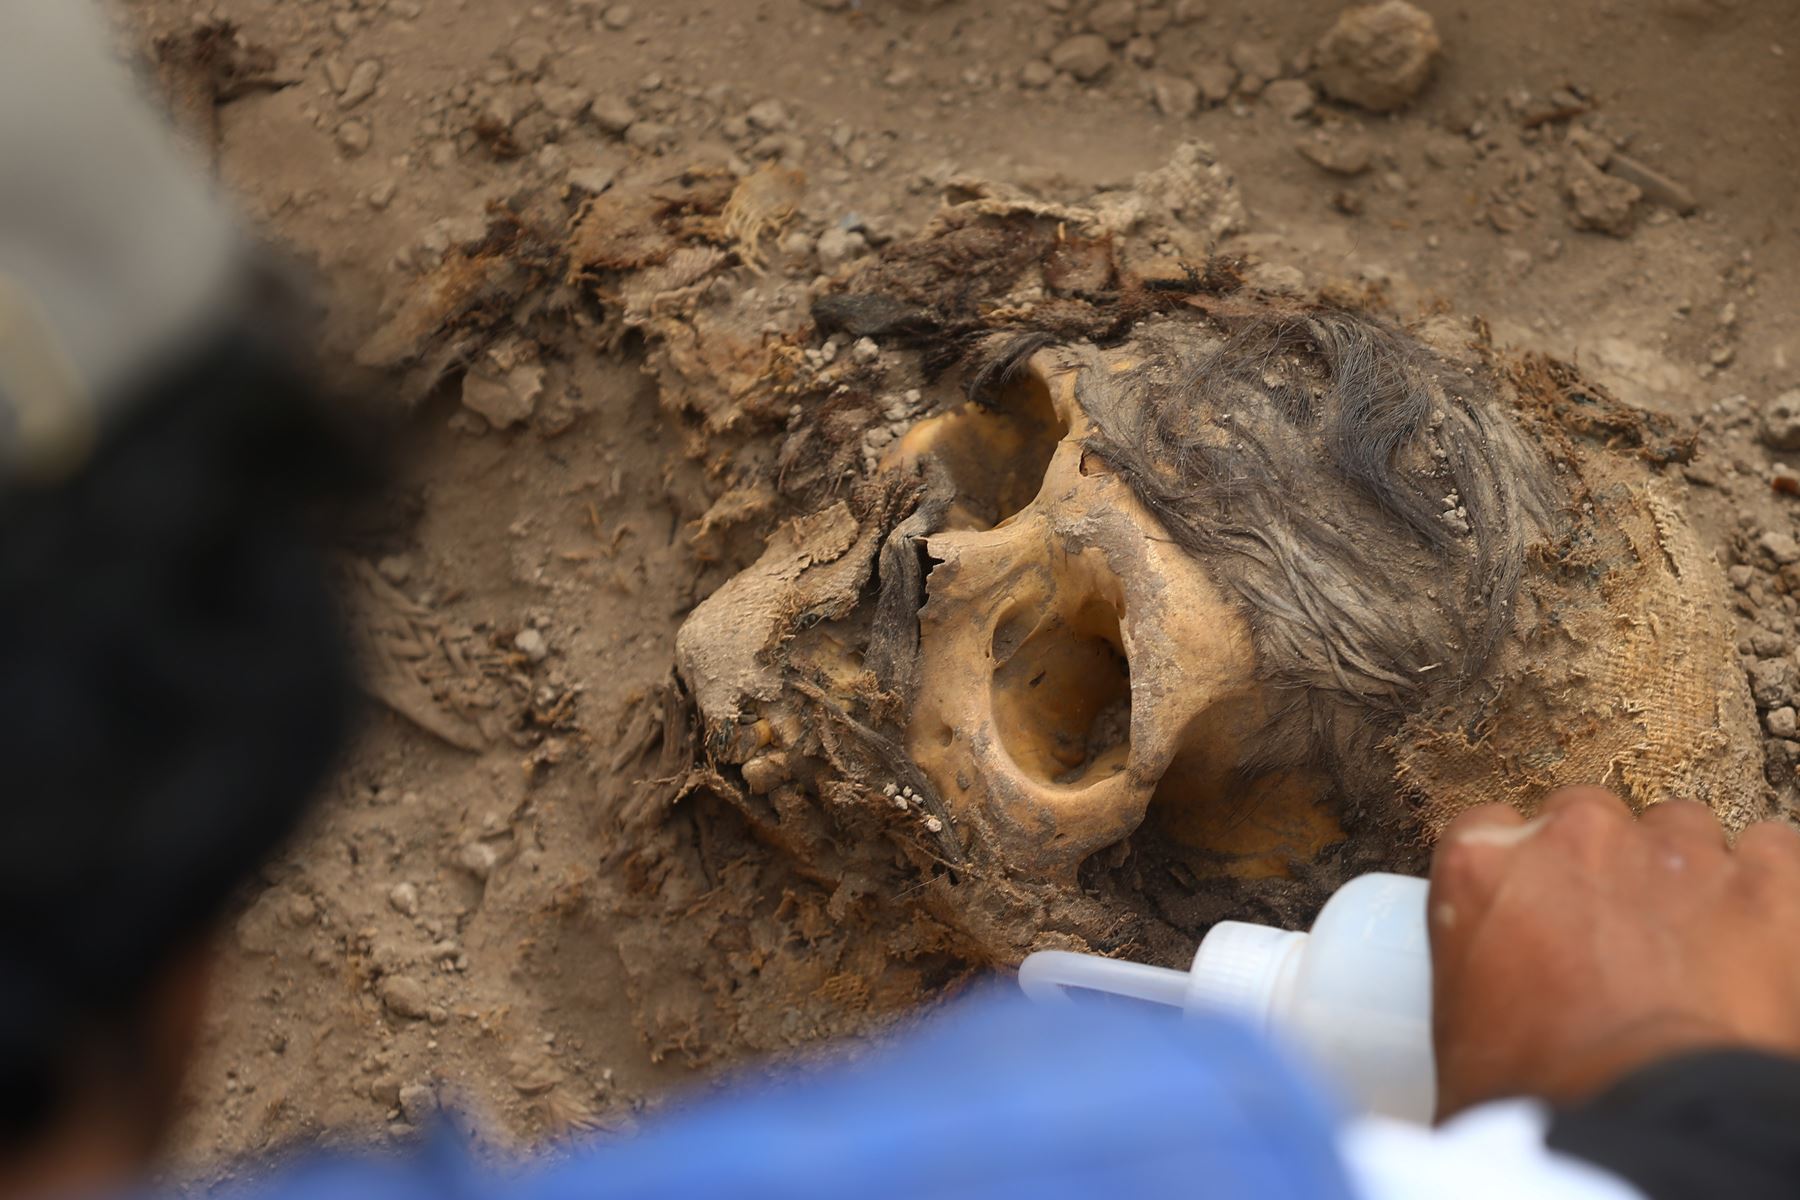 Inicialmente se hallaron pedazos de cabellos para posteriormente encontrar el cráneo y la tumba de piedra, envuelta en un fardo funerario, informaron voceros del municipio distrital. Foto: ANDINA/Eddy Ramos